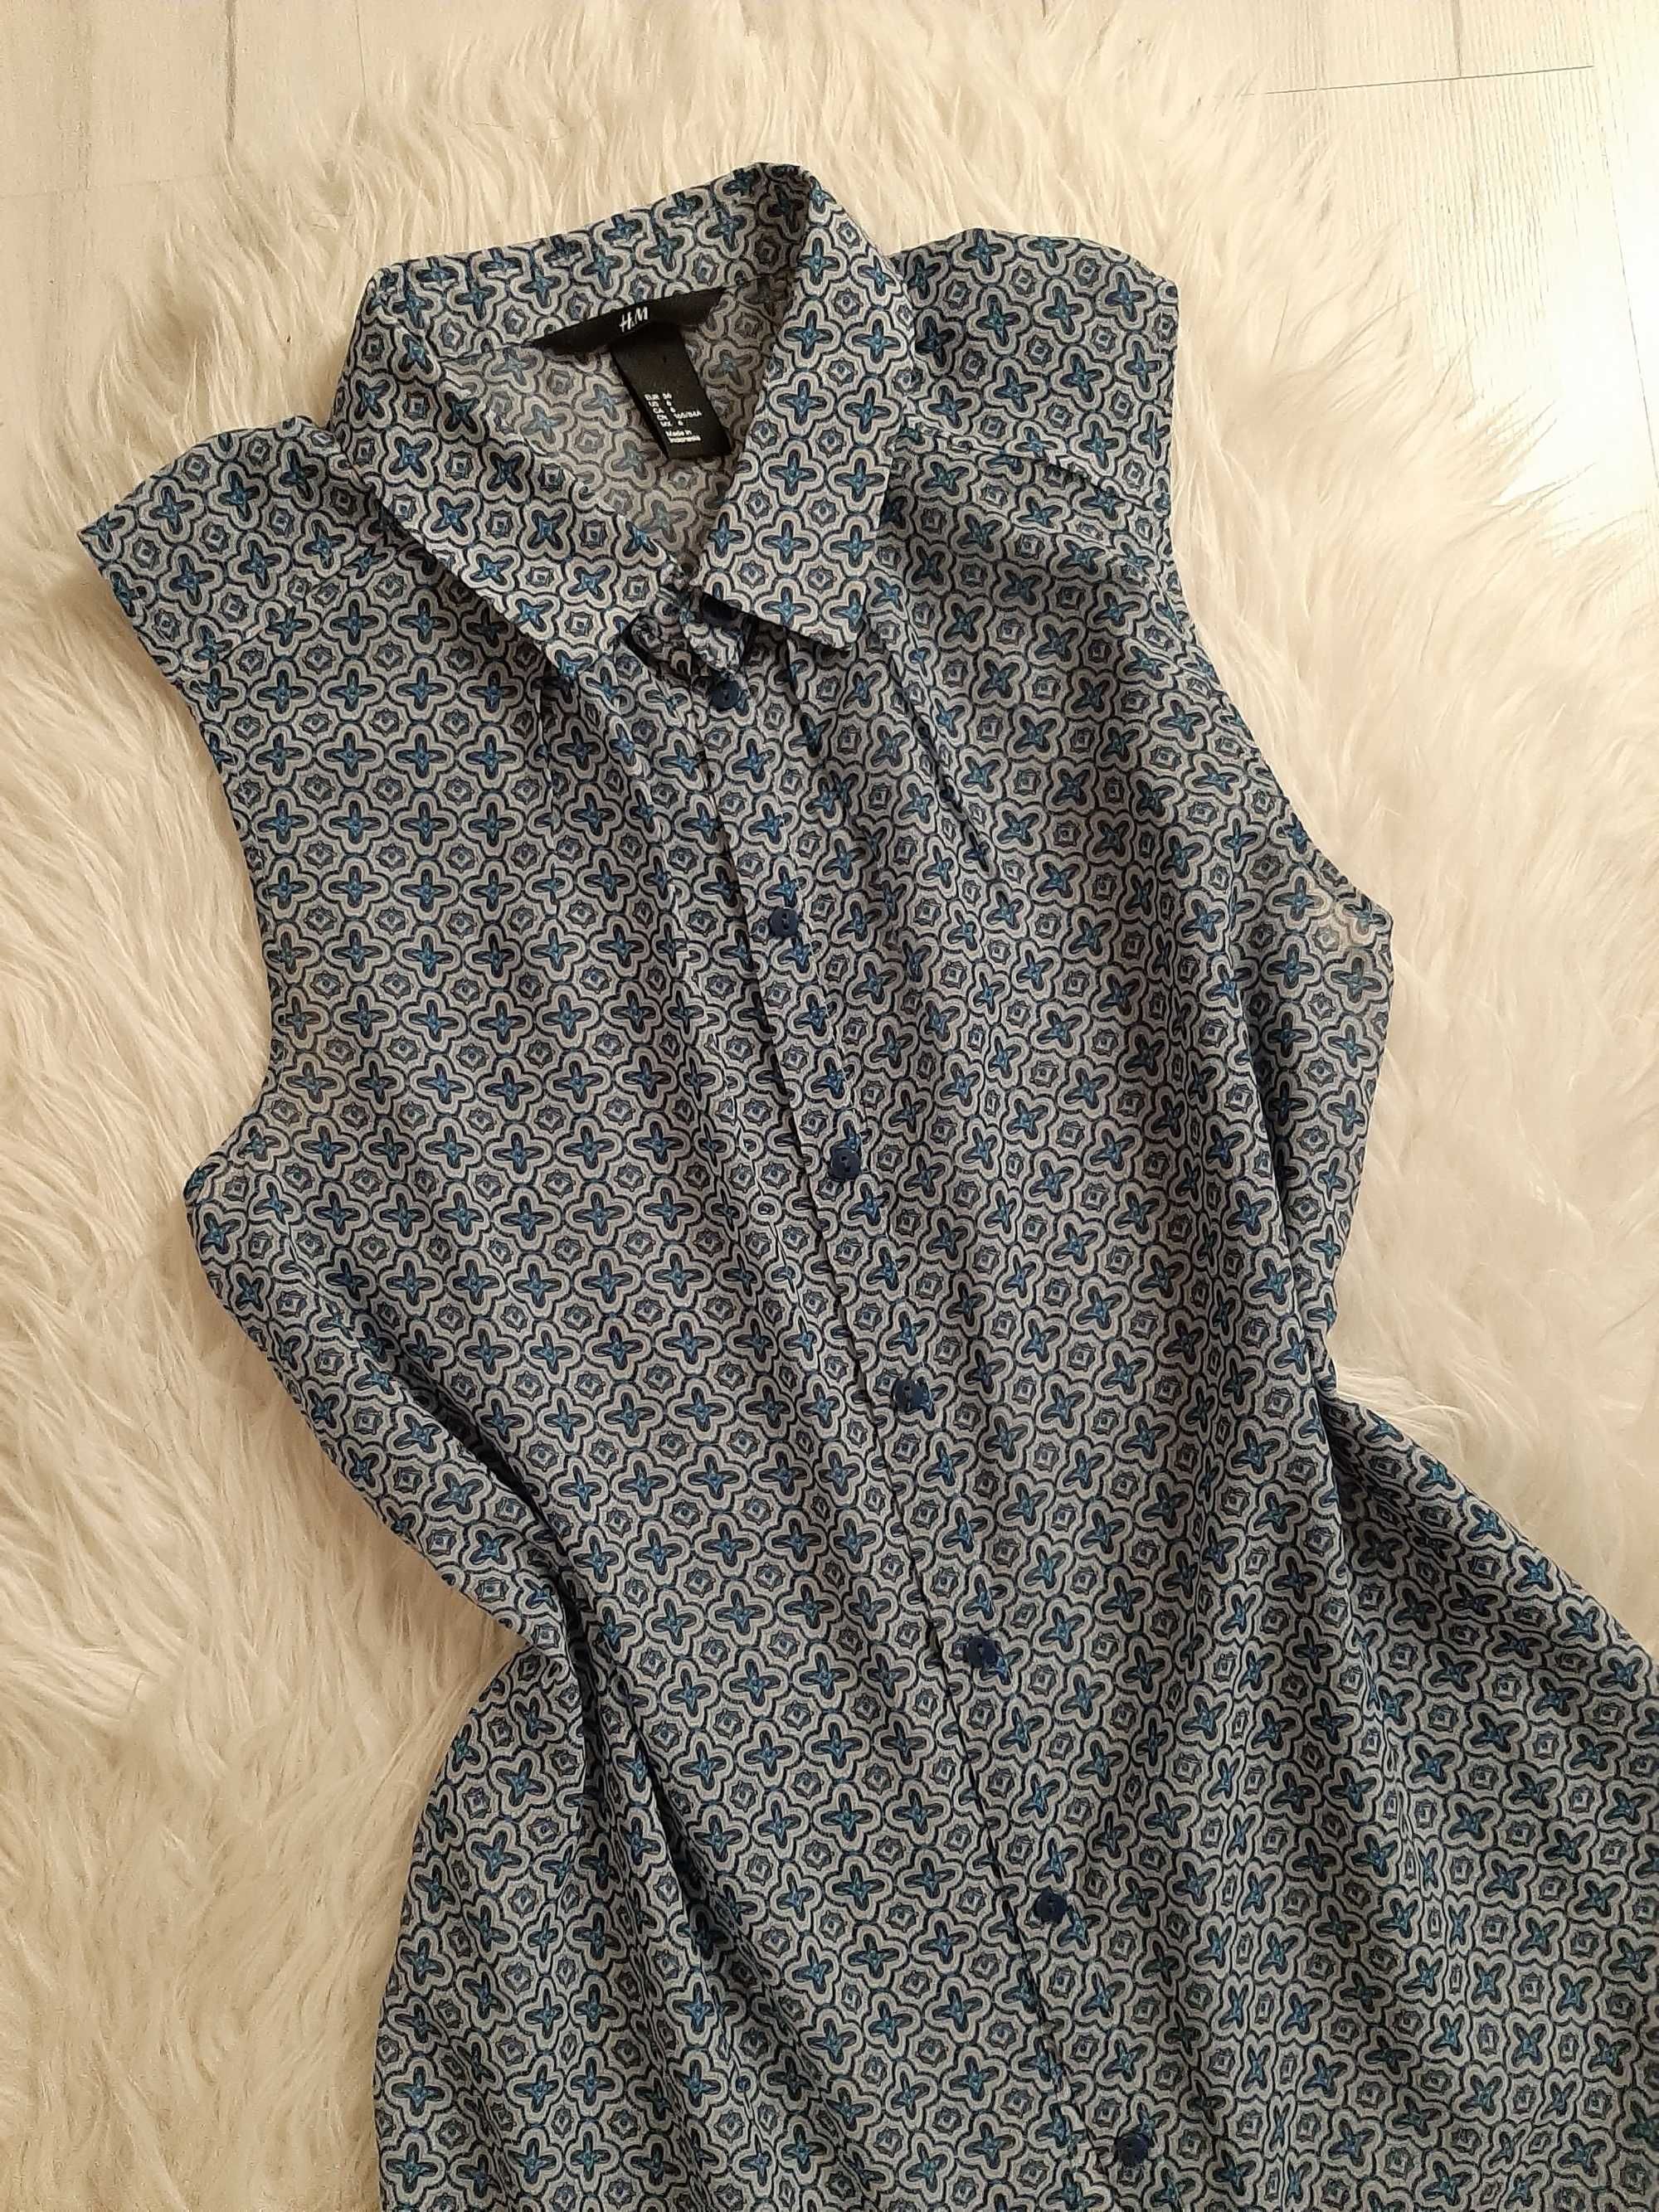 H&M piękna bluzka niebieska we wzorki 36 S